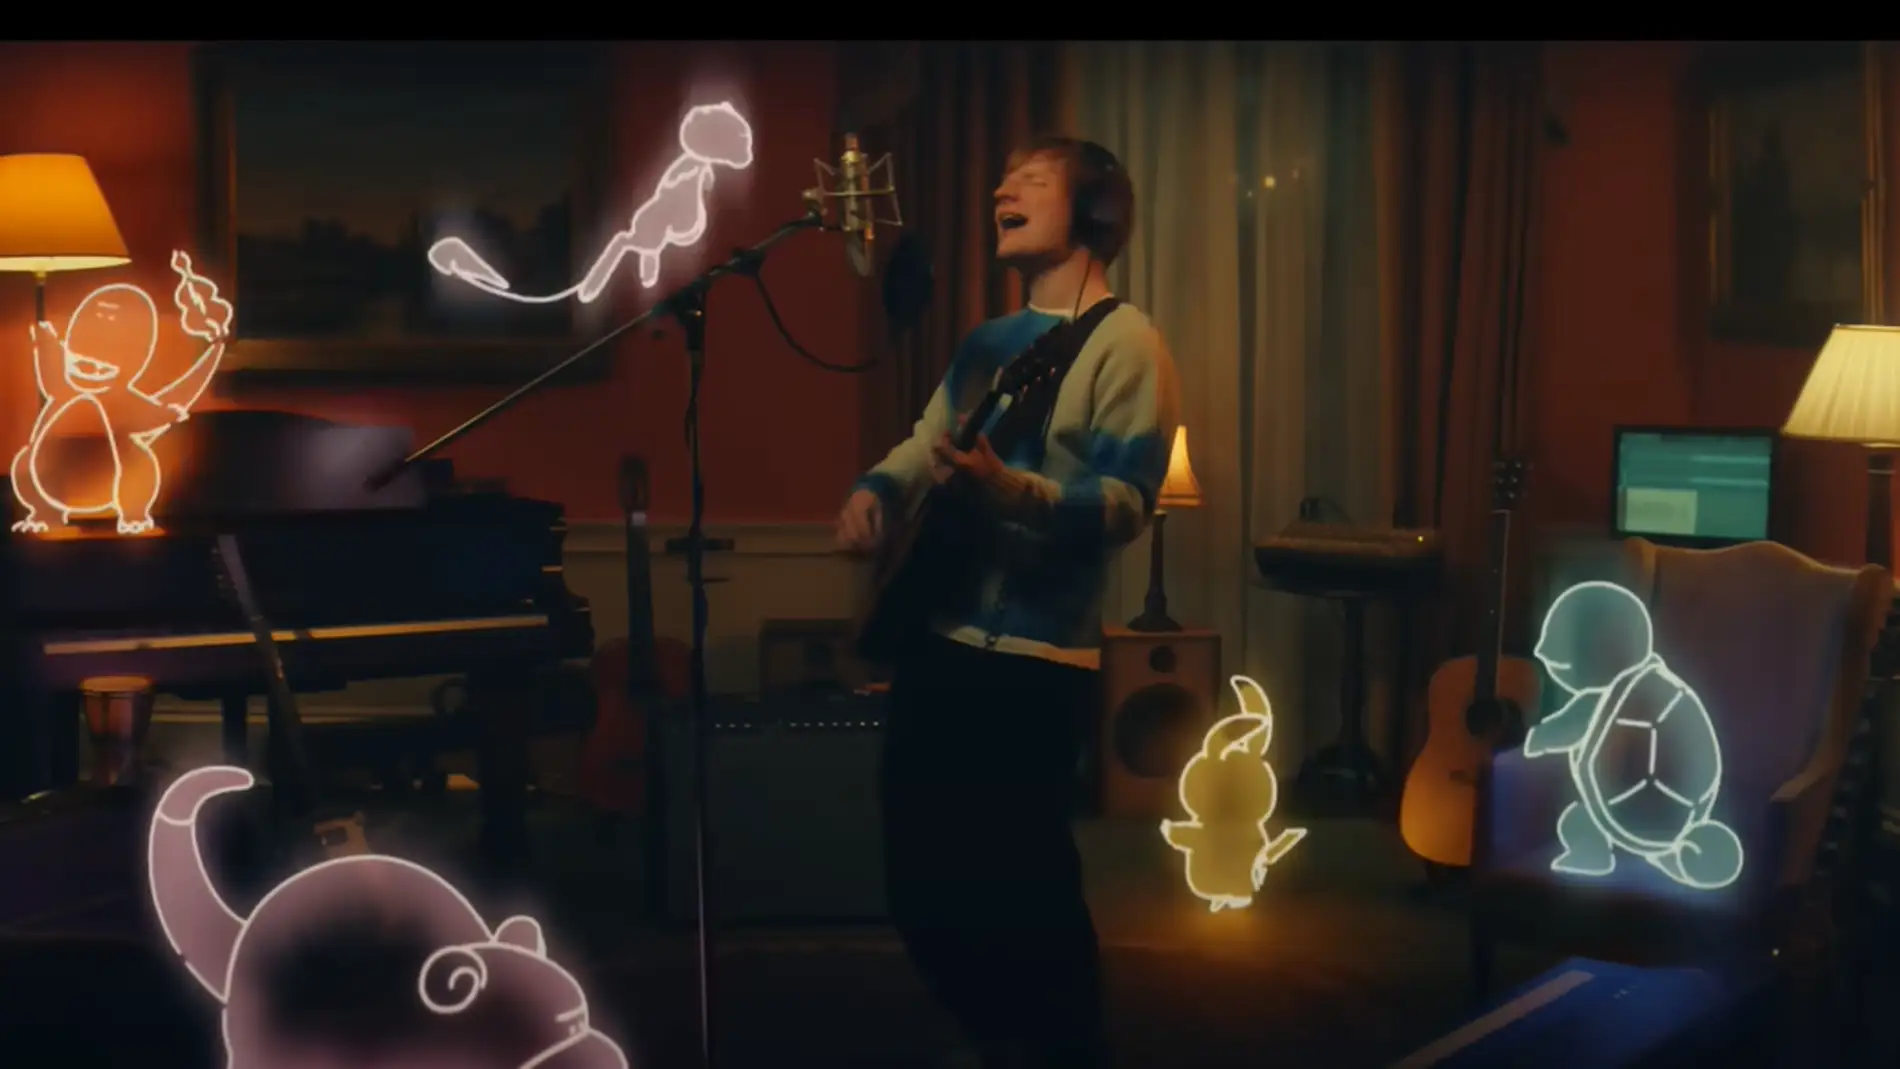 El emotivo vídeo y nueva canción de Ed Sheeran con el que recuerda su infancia jugando a Pokémon